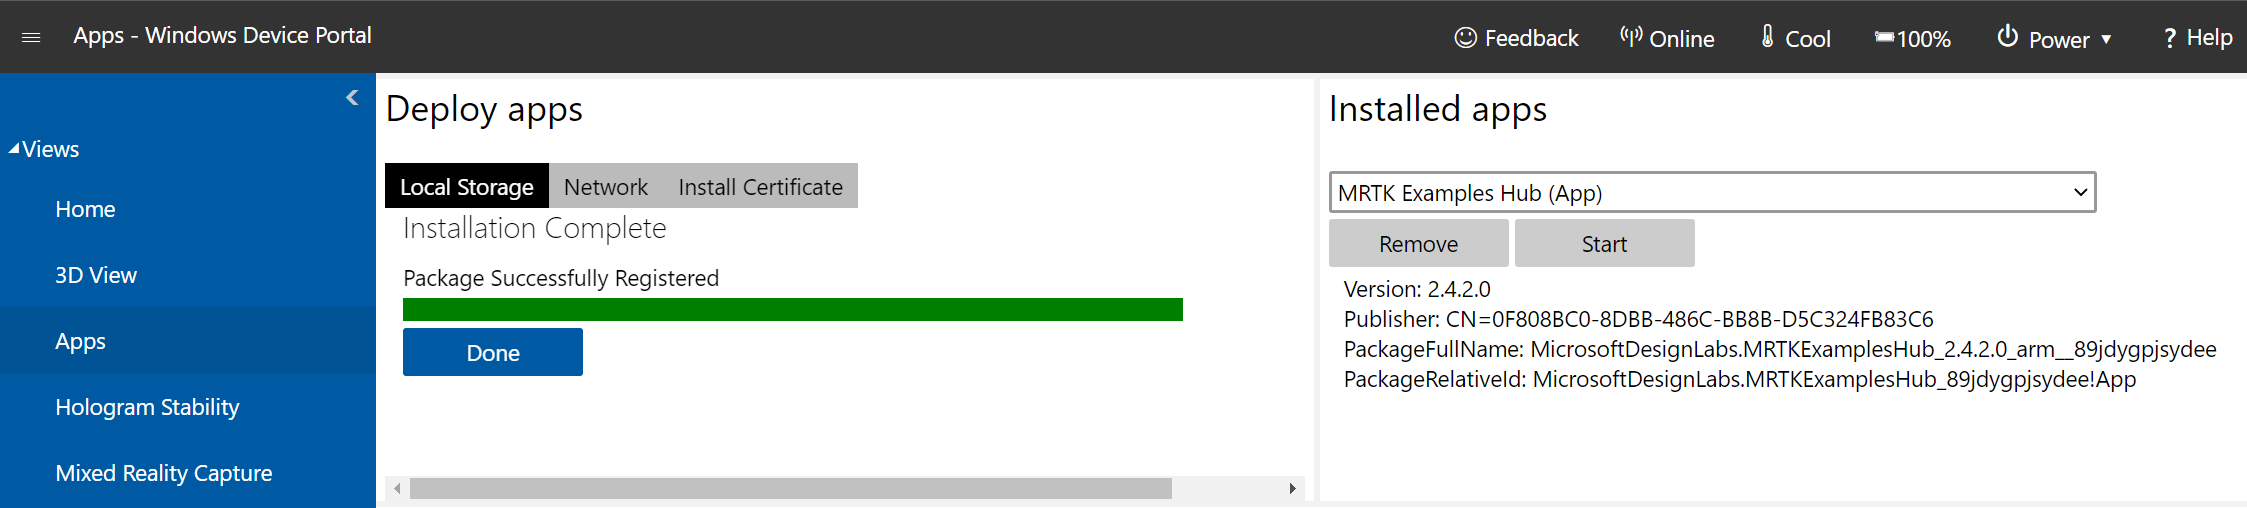 Snímek obrazovky se stránkou správce Apss otevřenou na portálu zařízení s Windows a úspěšně dokončenou instalací